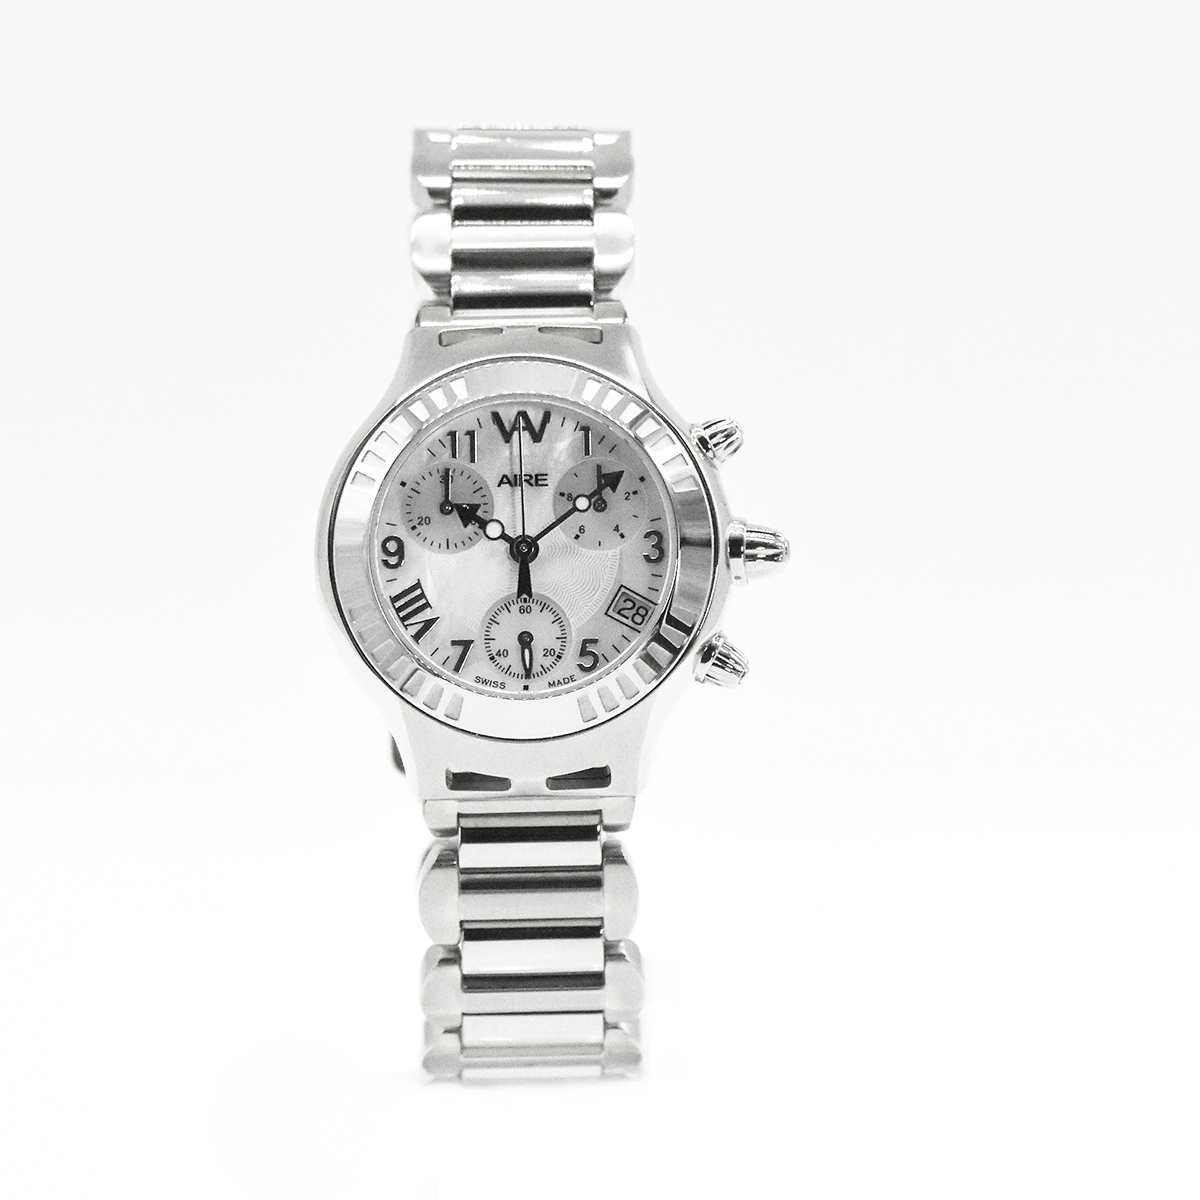 Women’s Watch - Chris Aire Parlay Swiss Made Quartz Chronograph Women's Watch